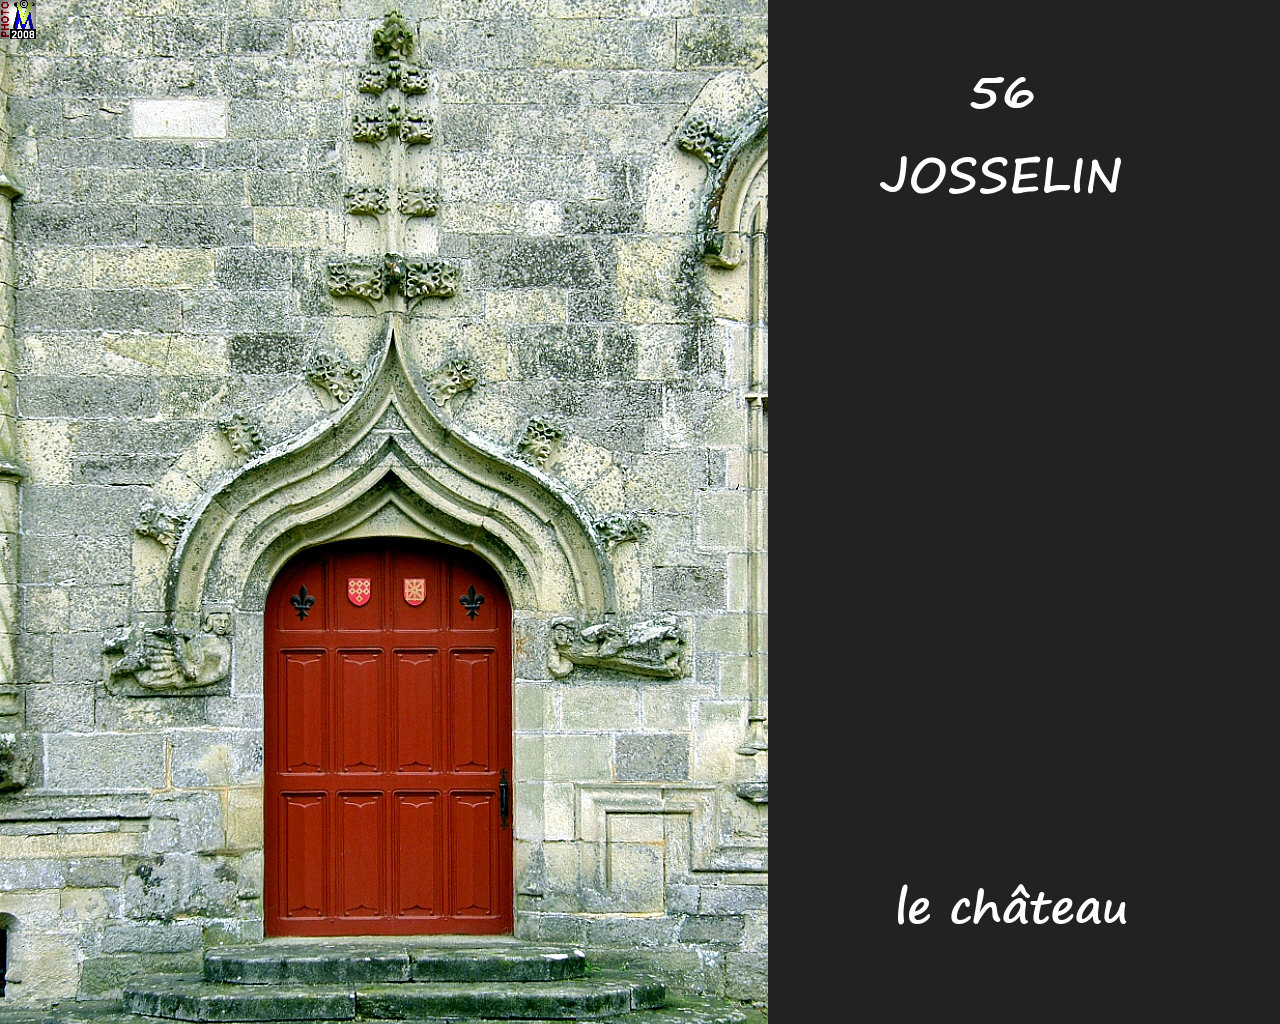 56JOSSELIN_chateau_234.jpg